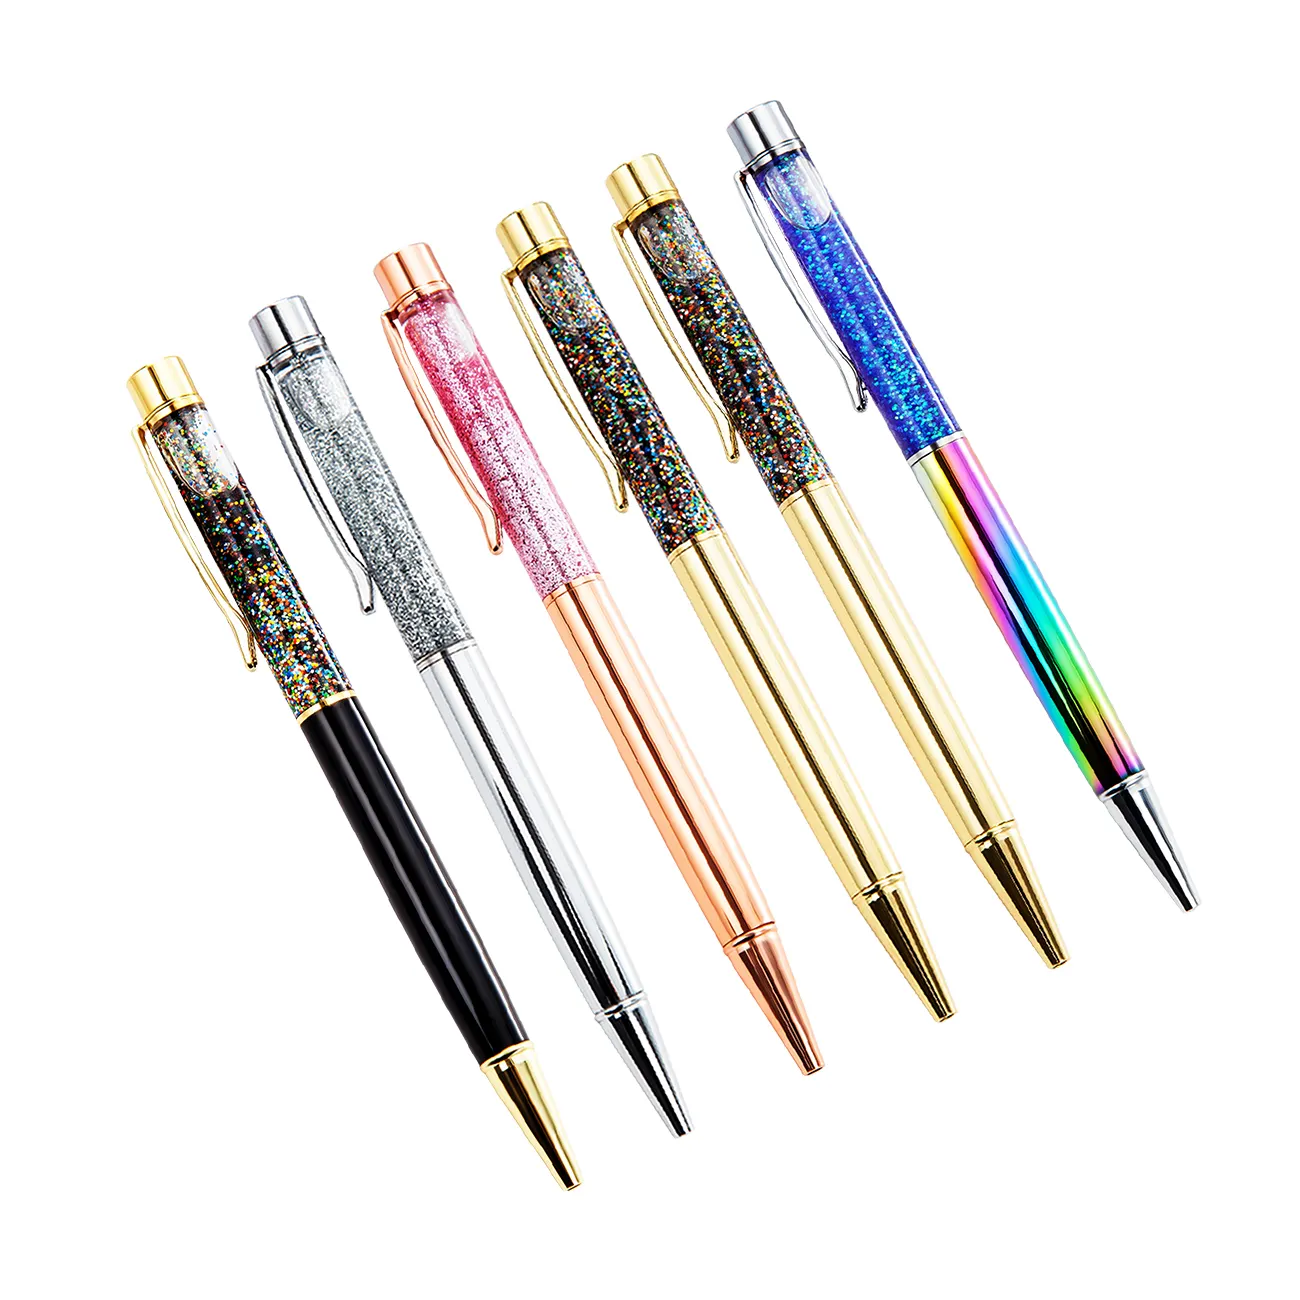 סין הנמכר ביותר קידום מכירות עט כדורי עם לוגו מותאם אישית מתכת כדור עטים משלוח דגימות